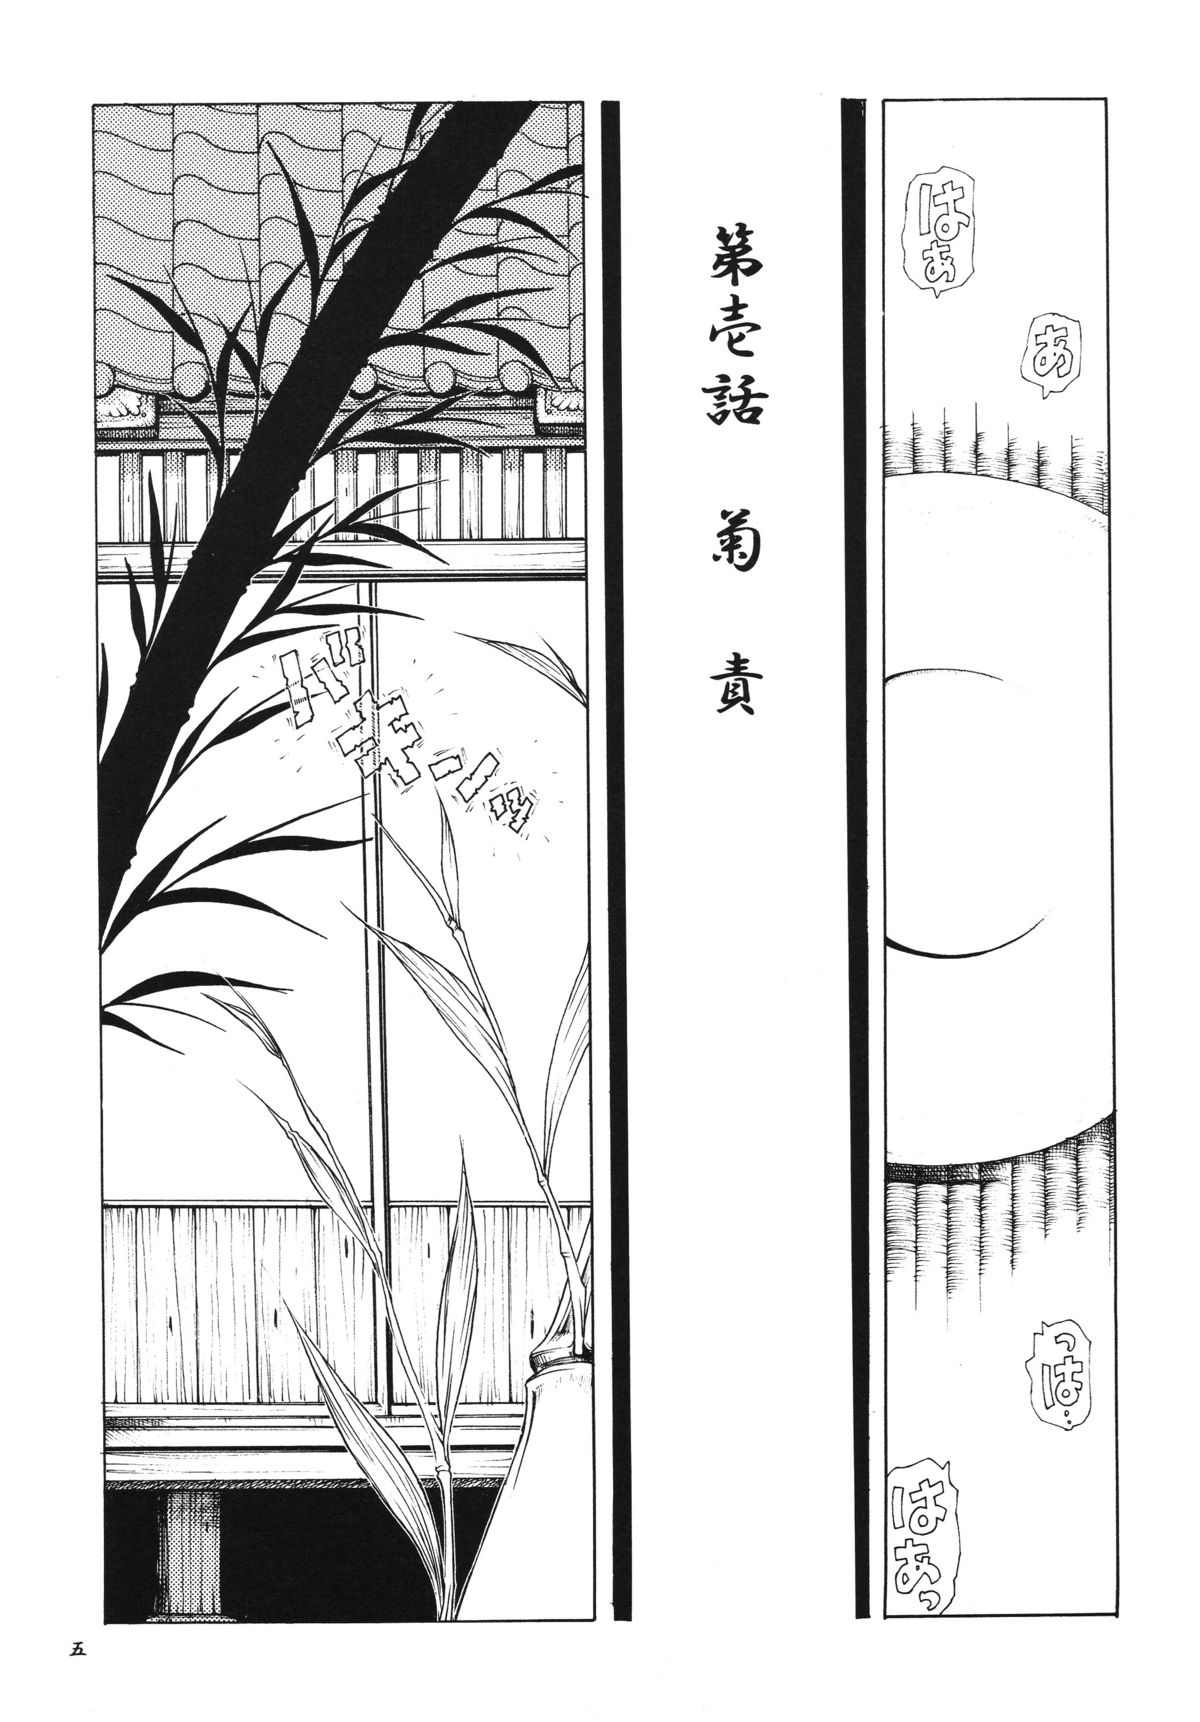 [Sumire Club] Tsuki no hikari ni teru kami iken -Gesshoku warireisai- (同人誌) [スミレ倶楽部] 月の光に照る髪異聞 月蝕割例祭